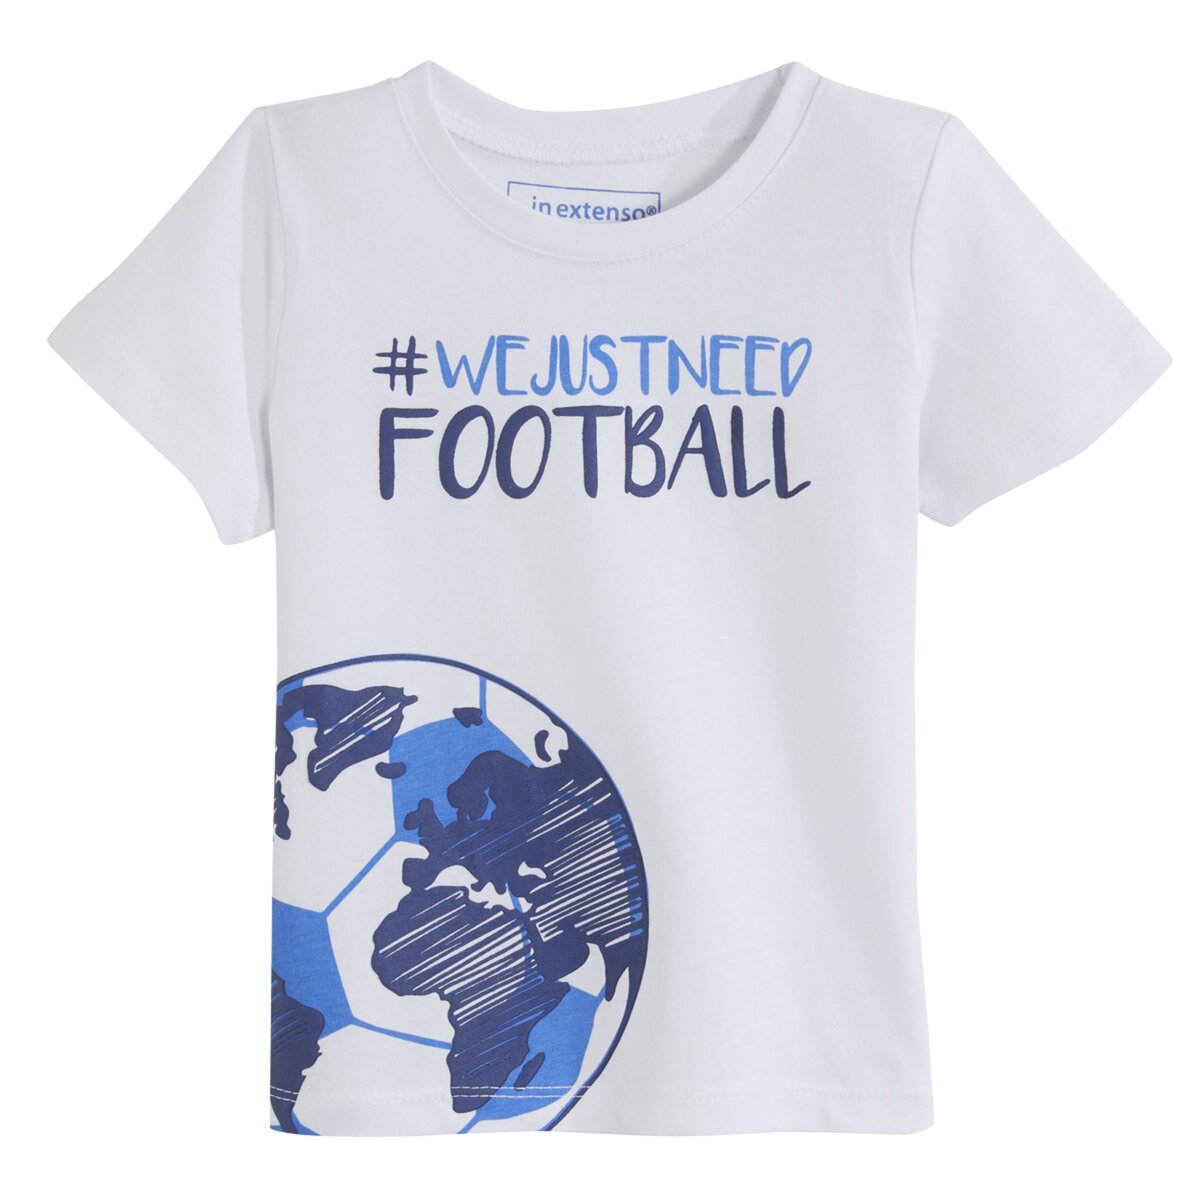 IN EXTENSO T-shirt manches courtes coupe du monde bébé garçon